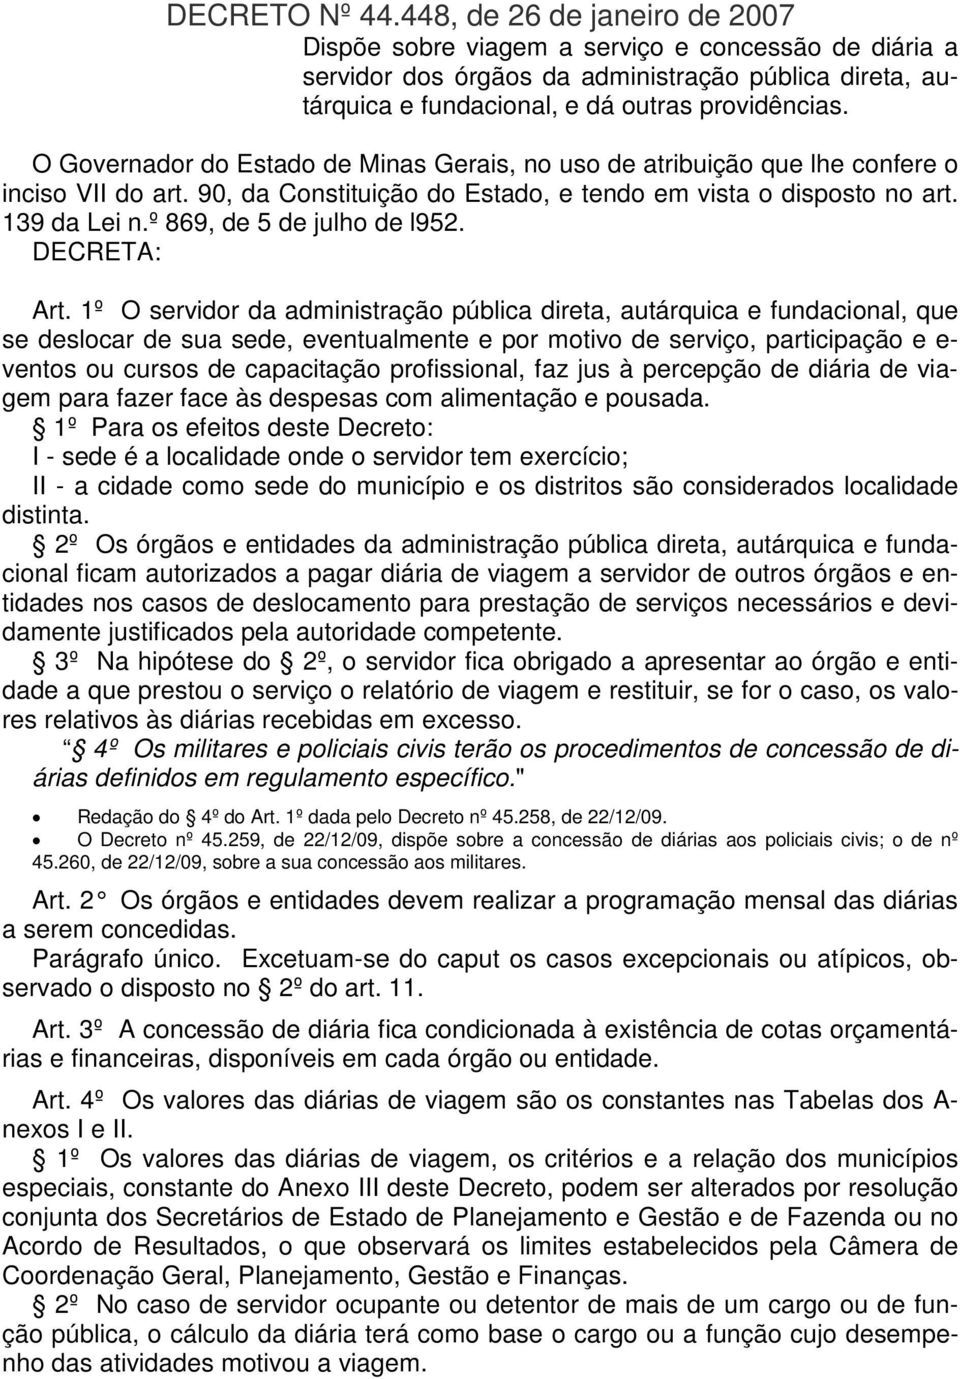 O Governador do Estado de Minas Gerais, no uso de atribuição que lhe confere o inciso VII do art. 90, da Constituição do Estado, e tendo em vista o disposto no art. 139 da Lei n.